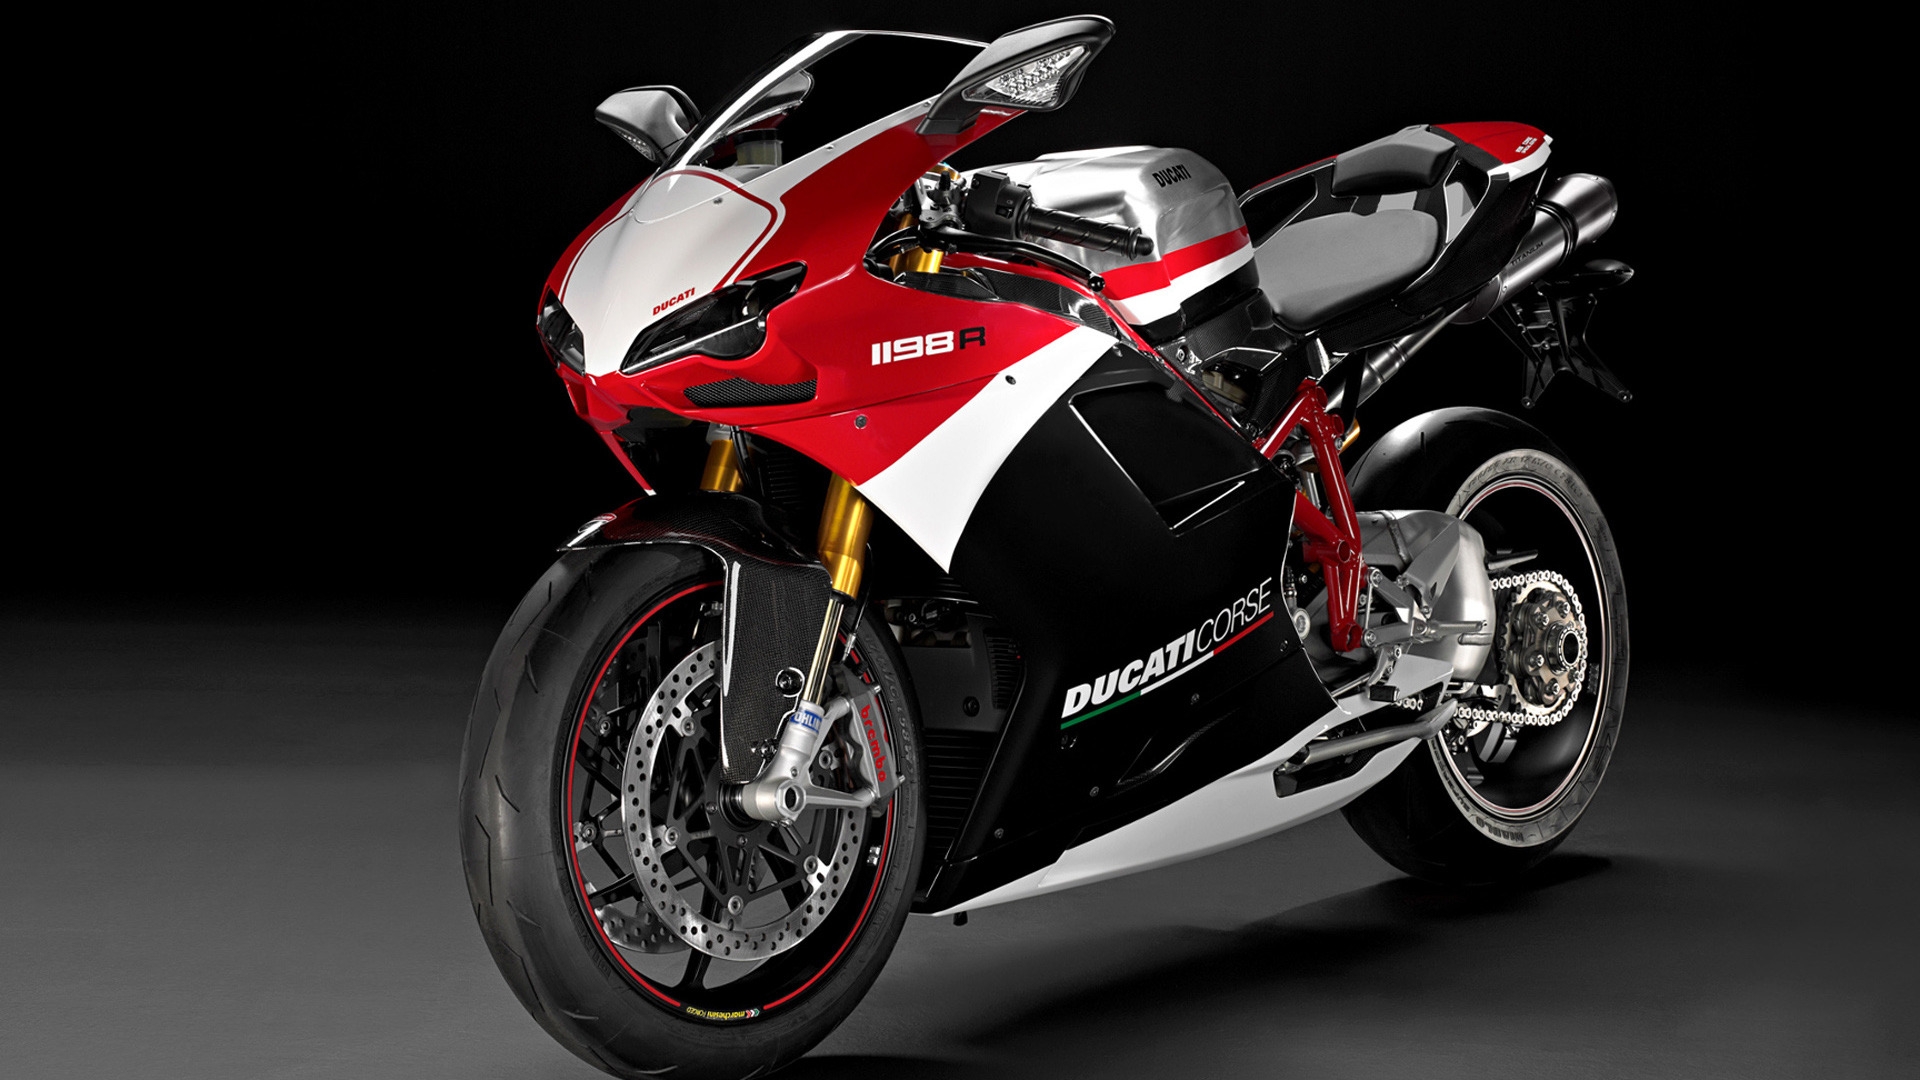 Ducati Superbike-1198-R-Corse for 1920 x 1080 HDTV 1080p resolution